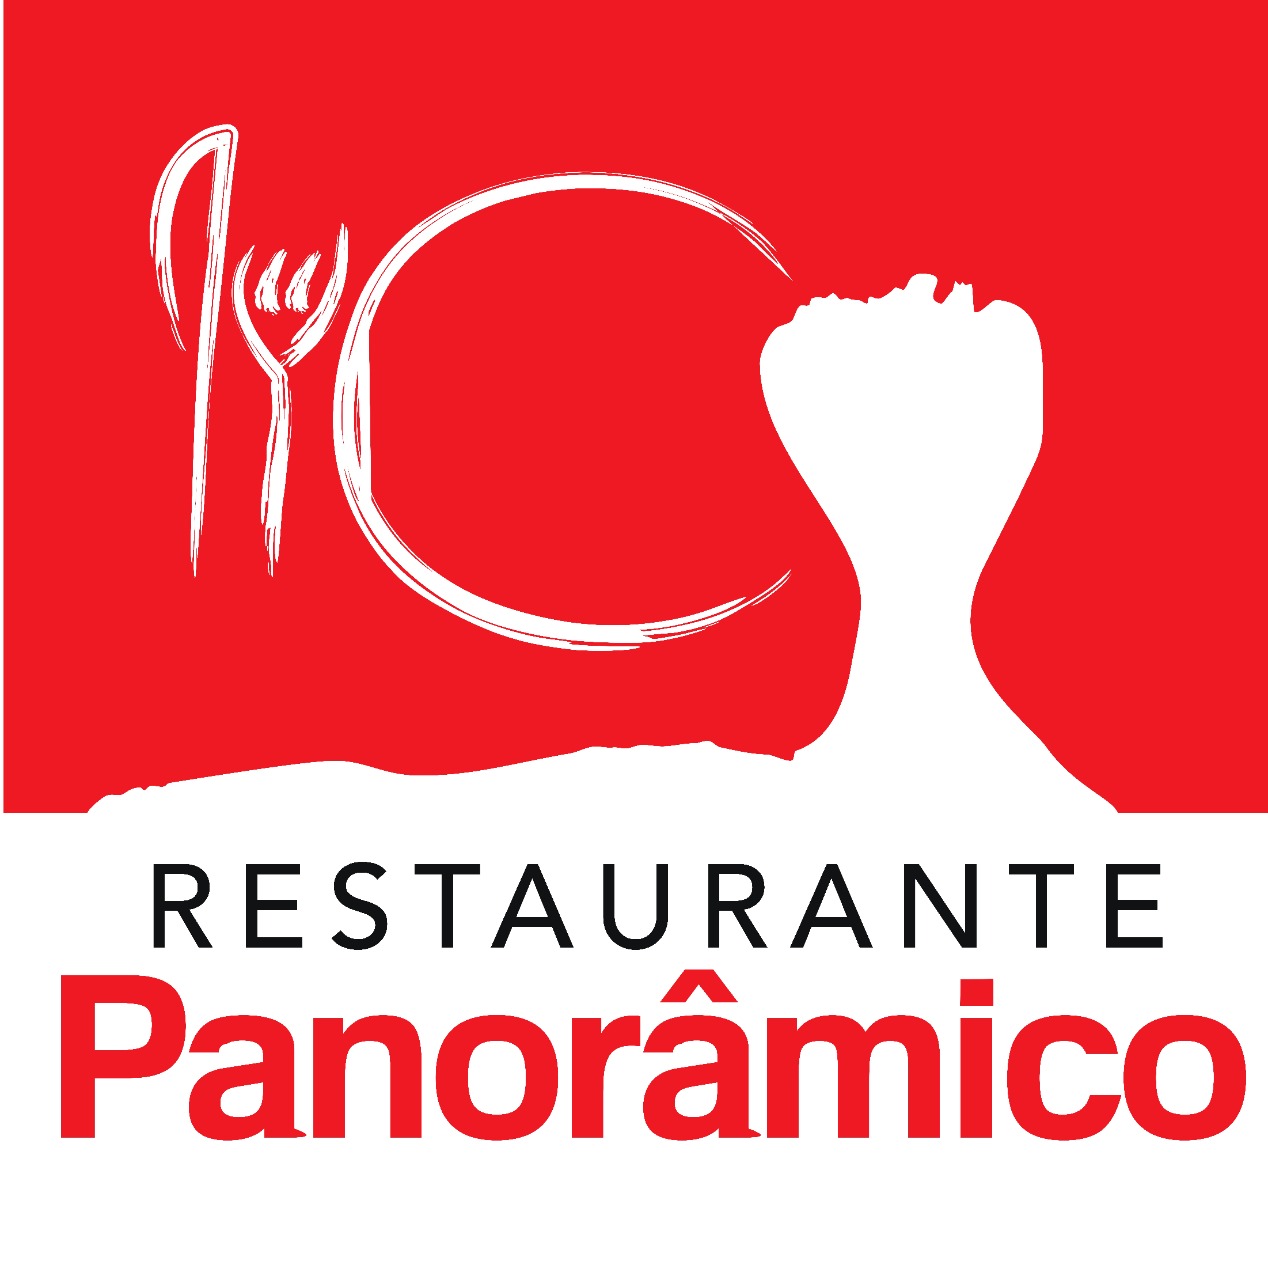 Restaurante Panoramico